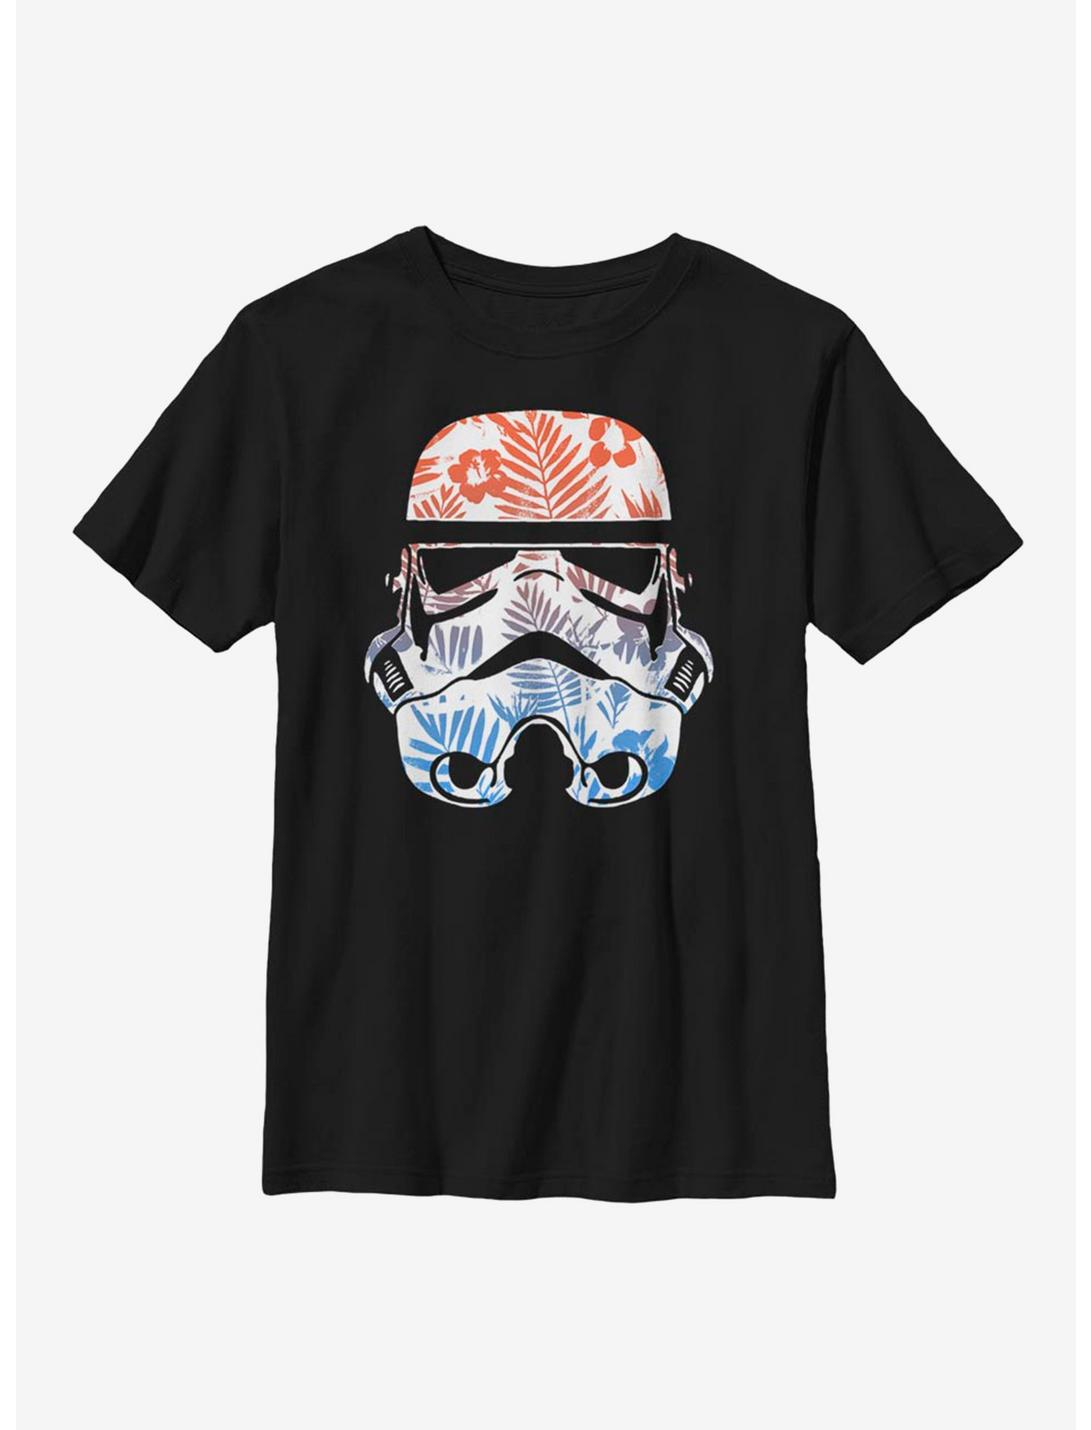 Star Wars Floral Trooper Youth T-Shirt, BLACK, hi-res